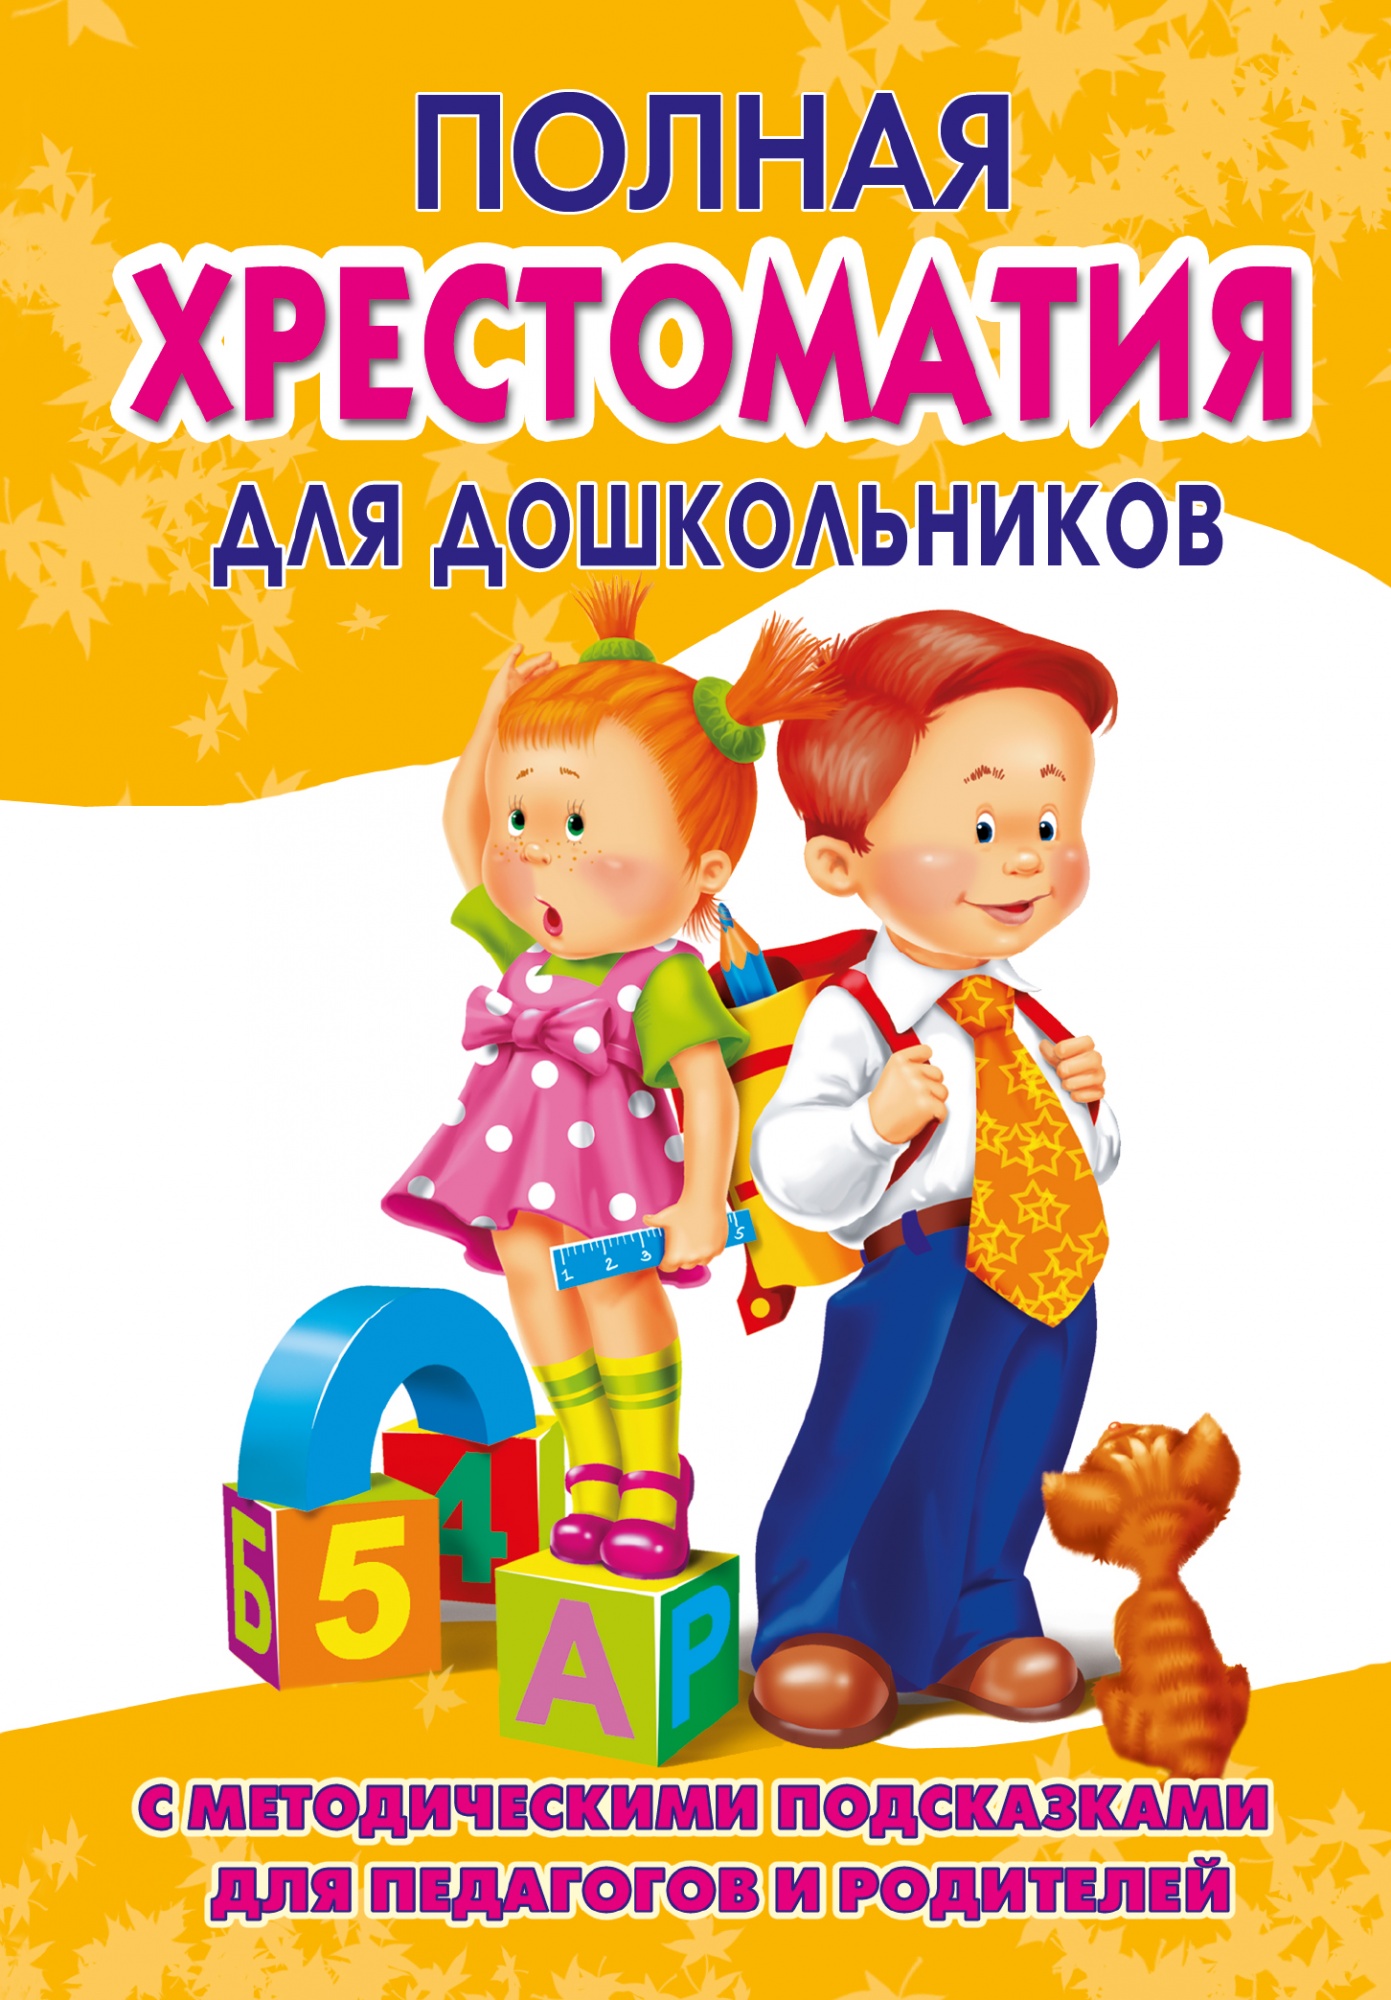 Полная хрестоматия для дошкольников 2 книга "Малыш"